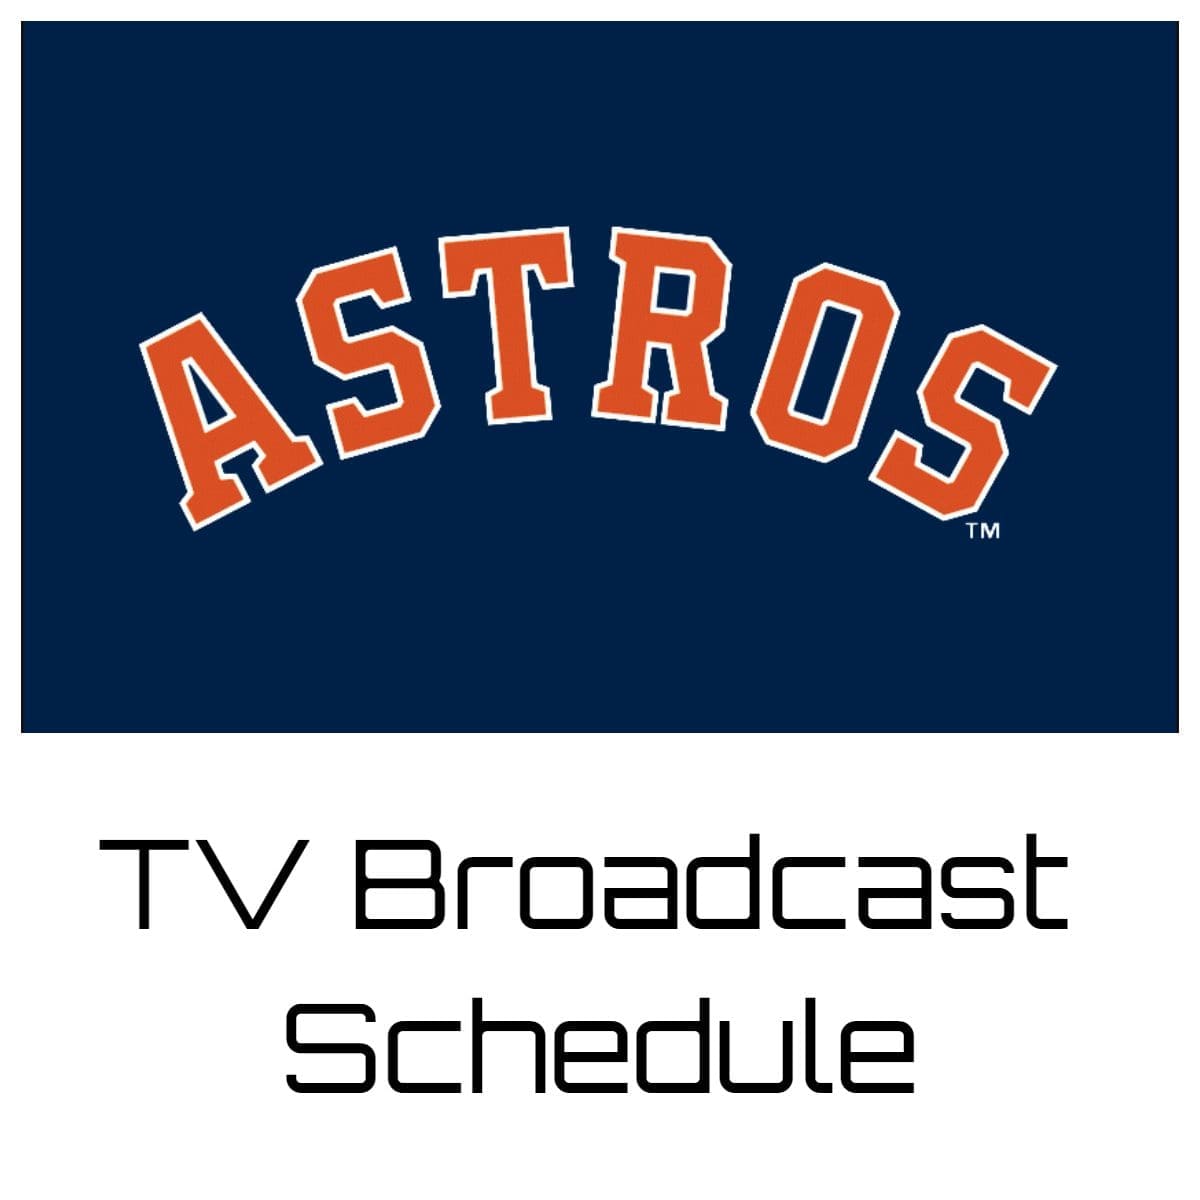 Houston Astros TV Broadcast Schedule